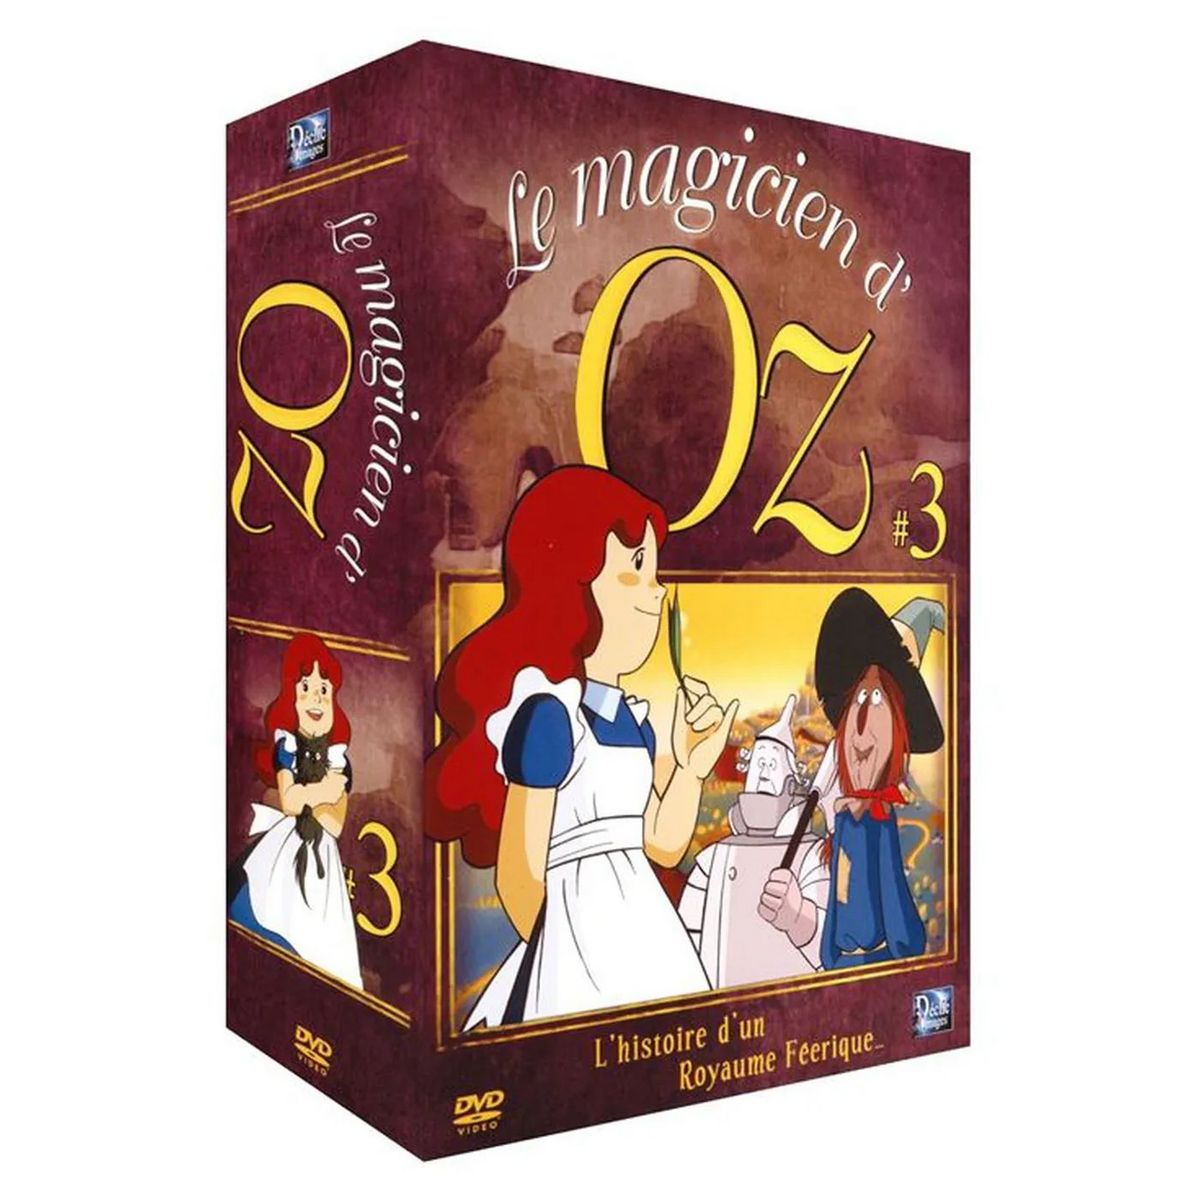 Le Magicien d'Oz Vol 3 DVD